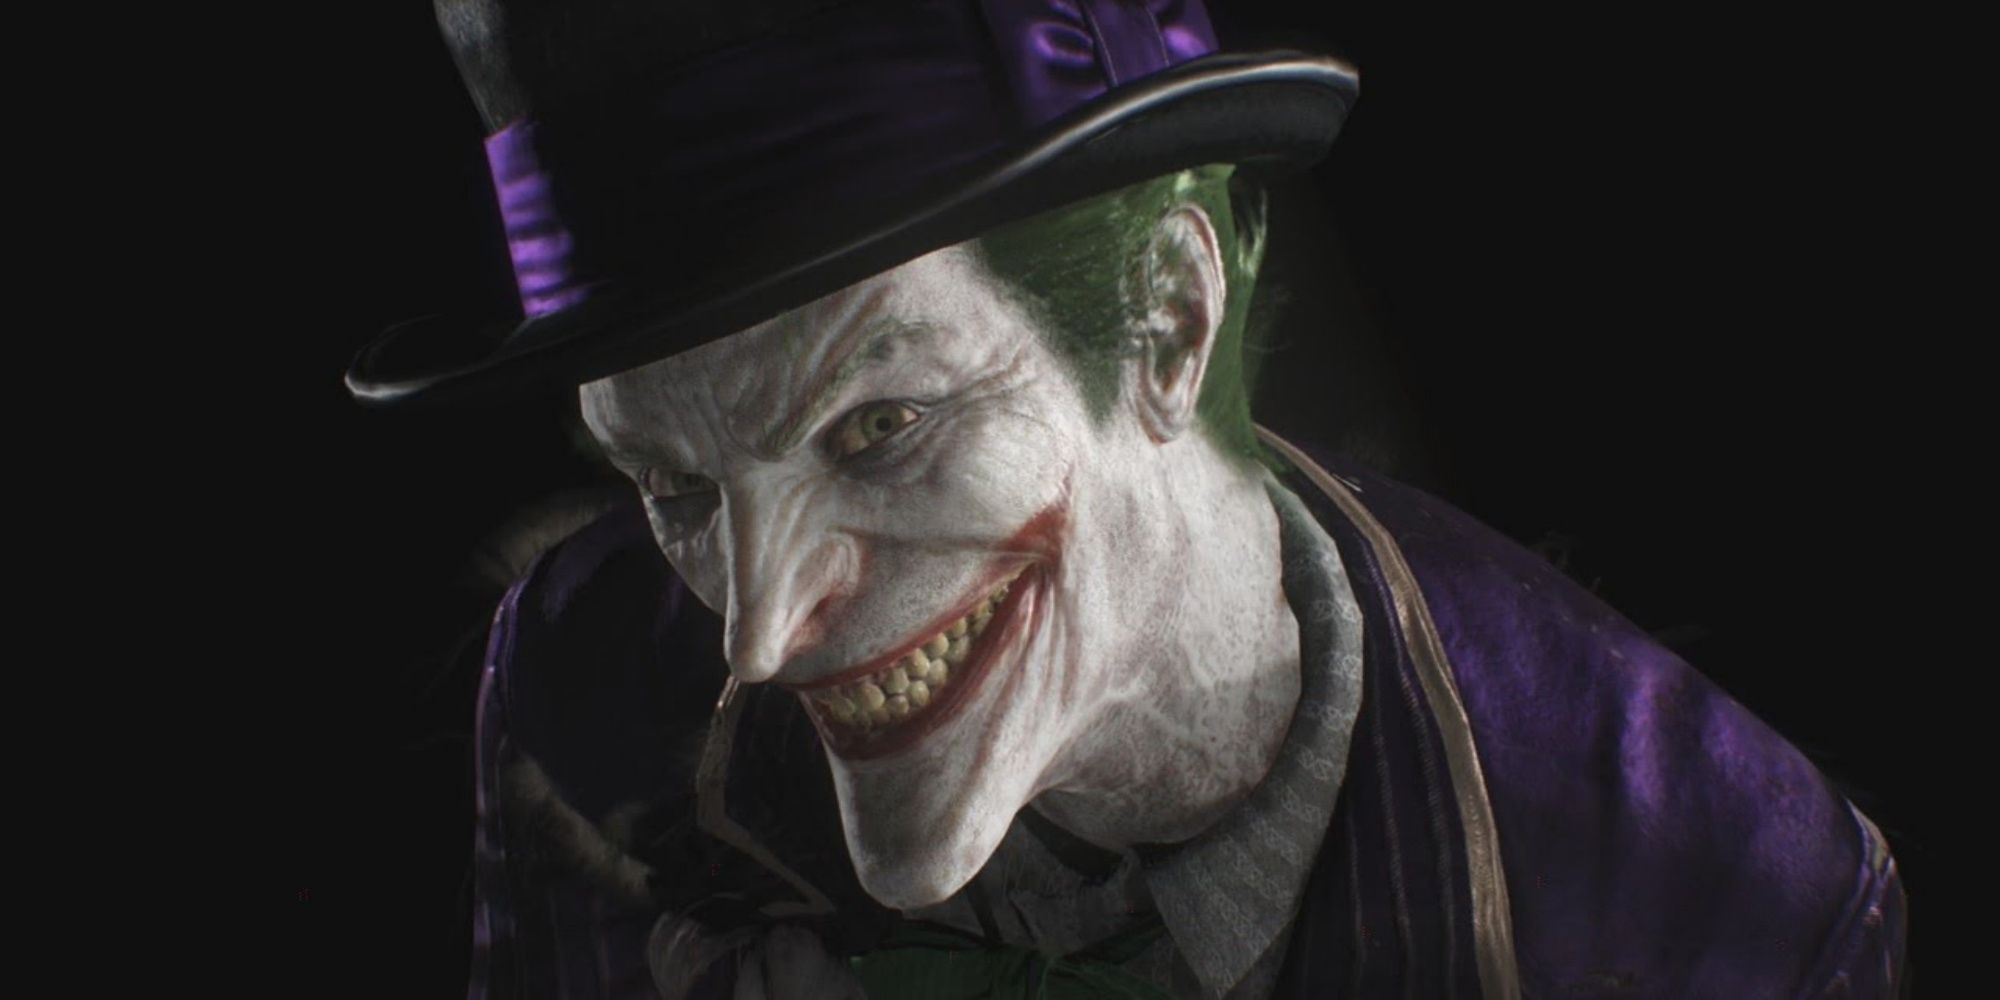 The Joker in Batman Arkham Asylum